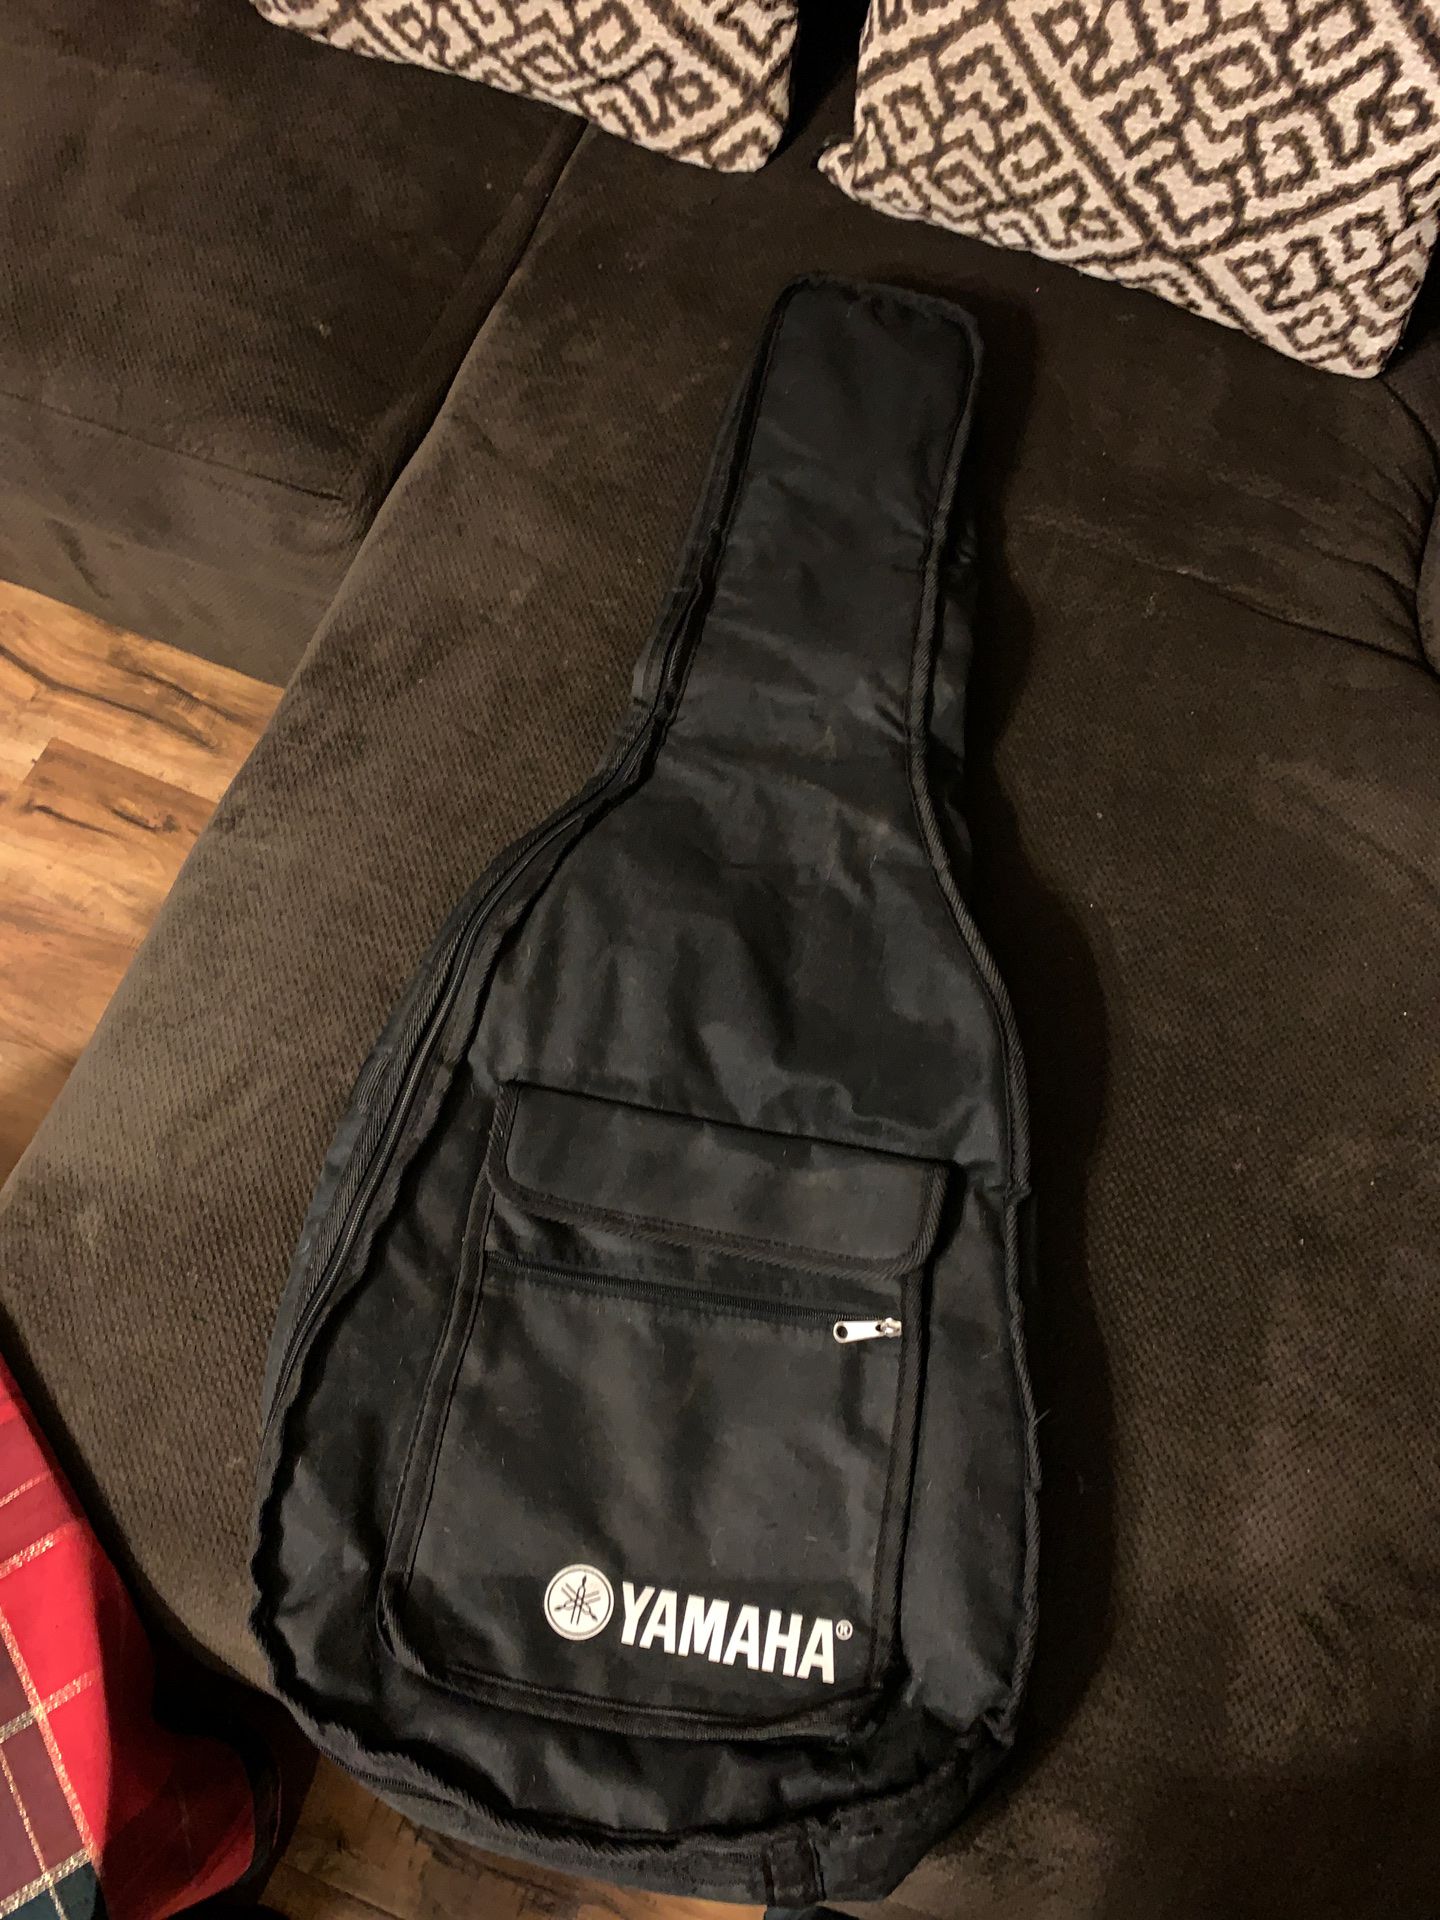 Yamaha guitar bag